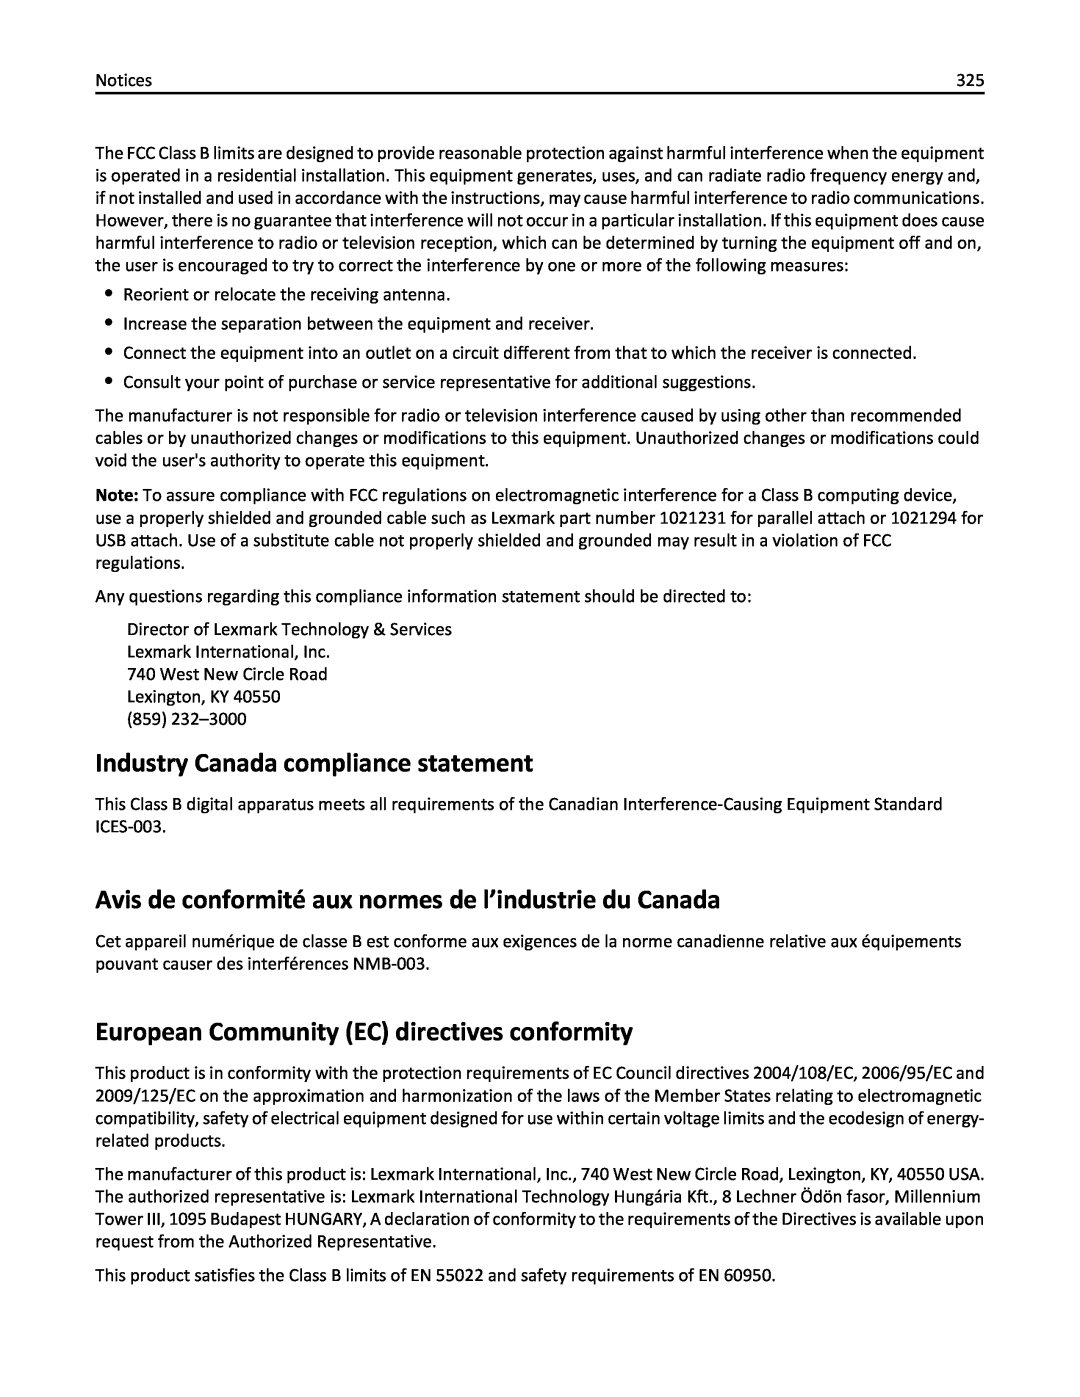 Lexmark 436 manual Industry Canada compliance statement, Avis de conformité aux normes de l’industrie du Canada 